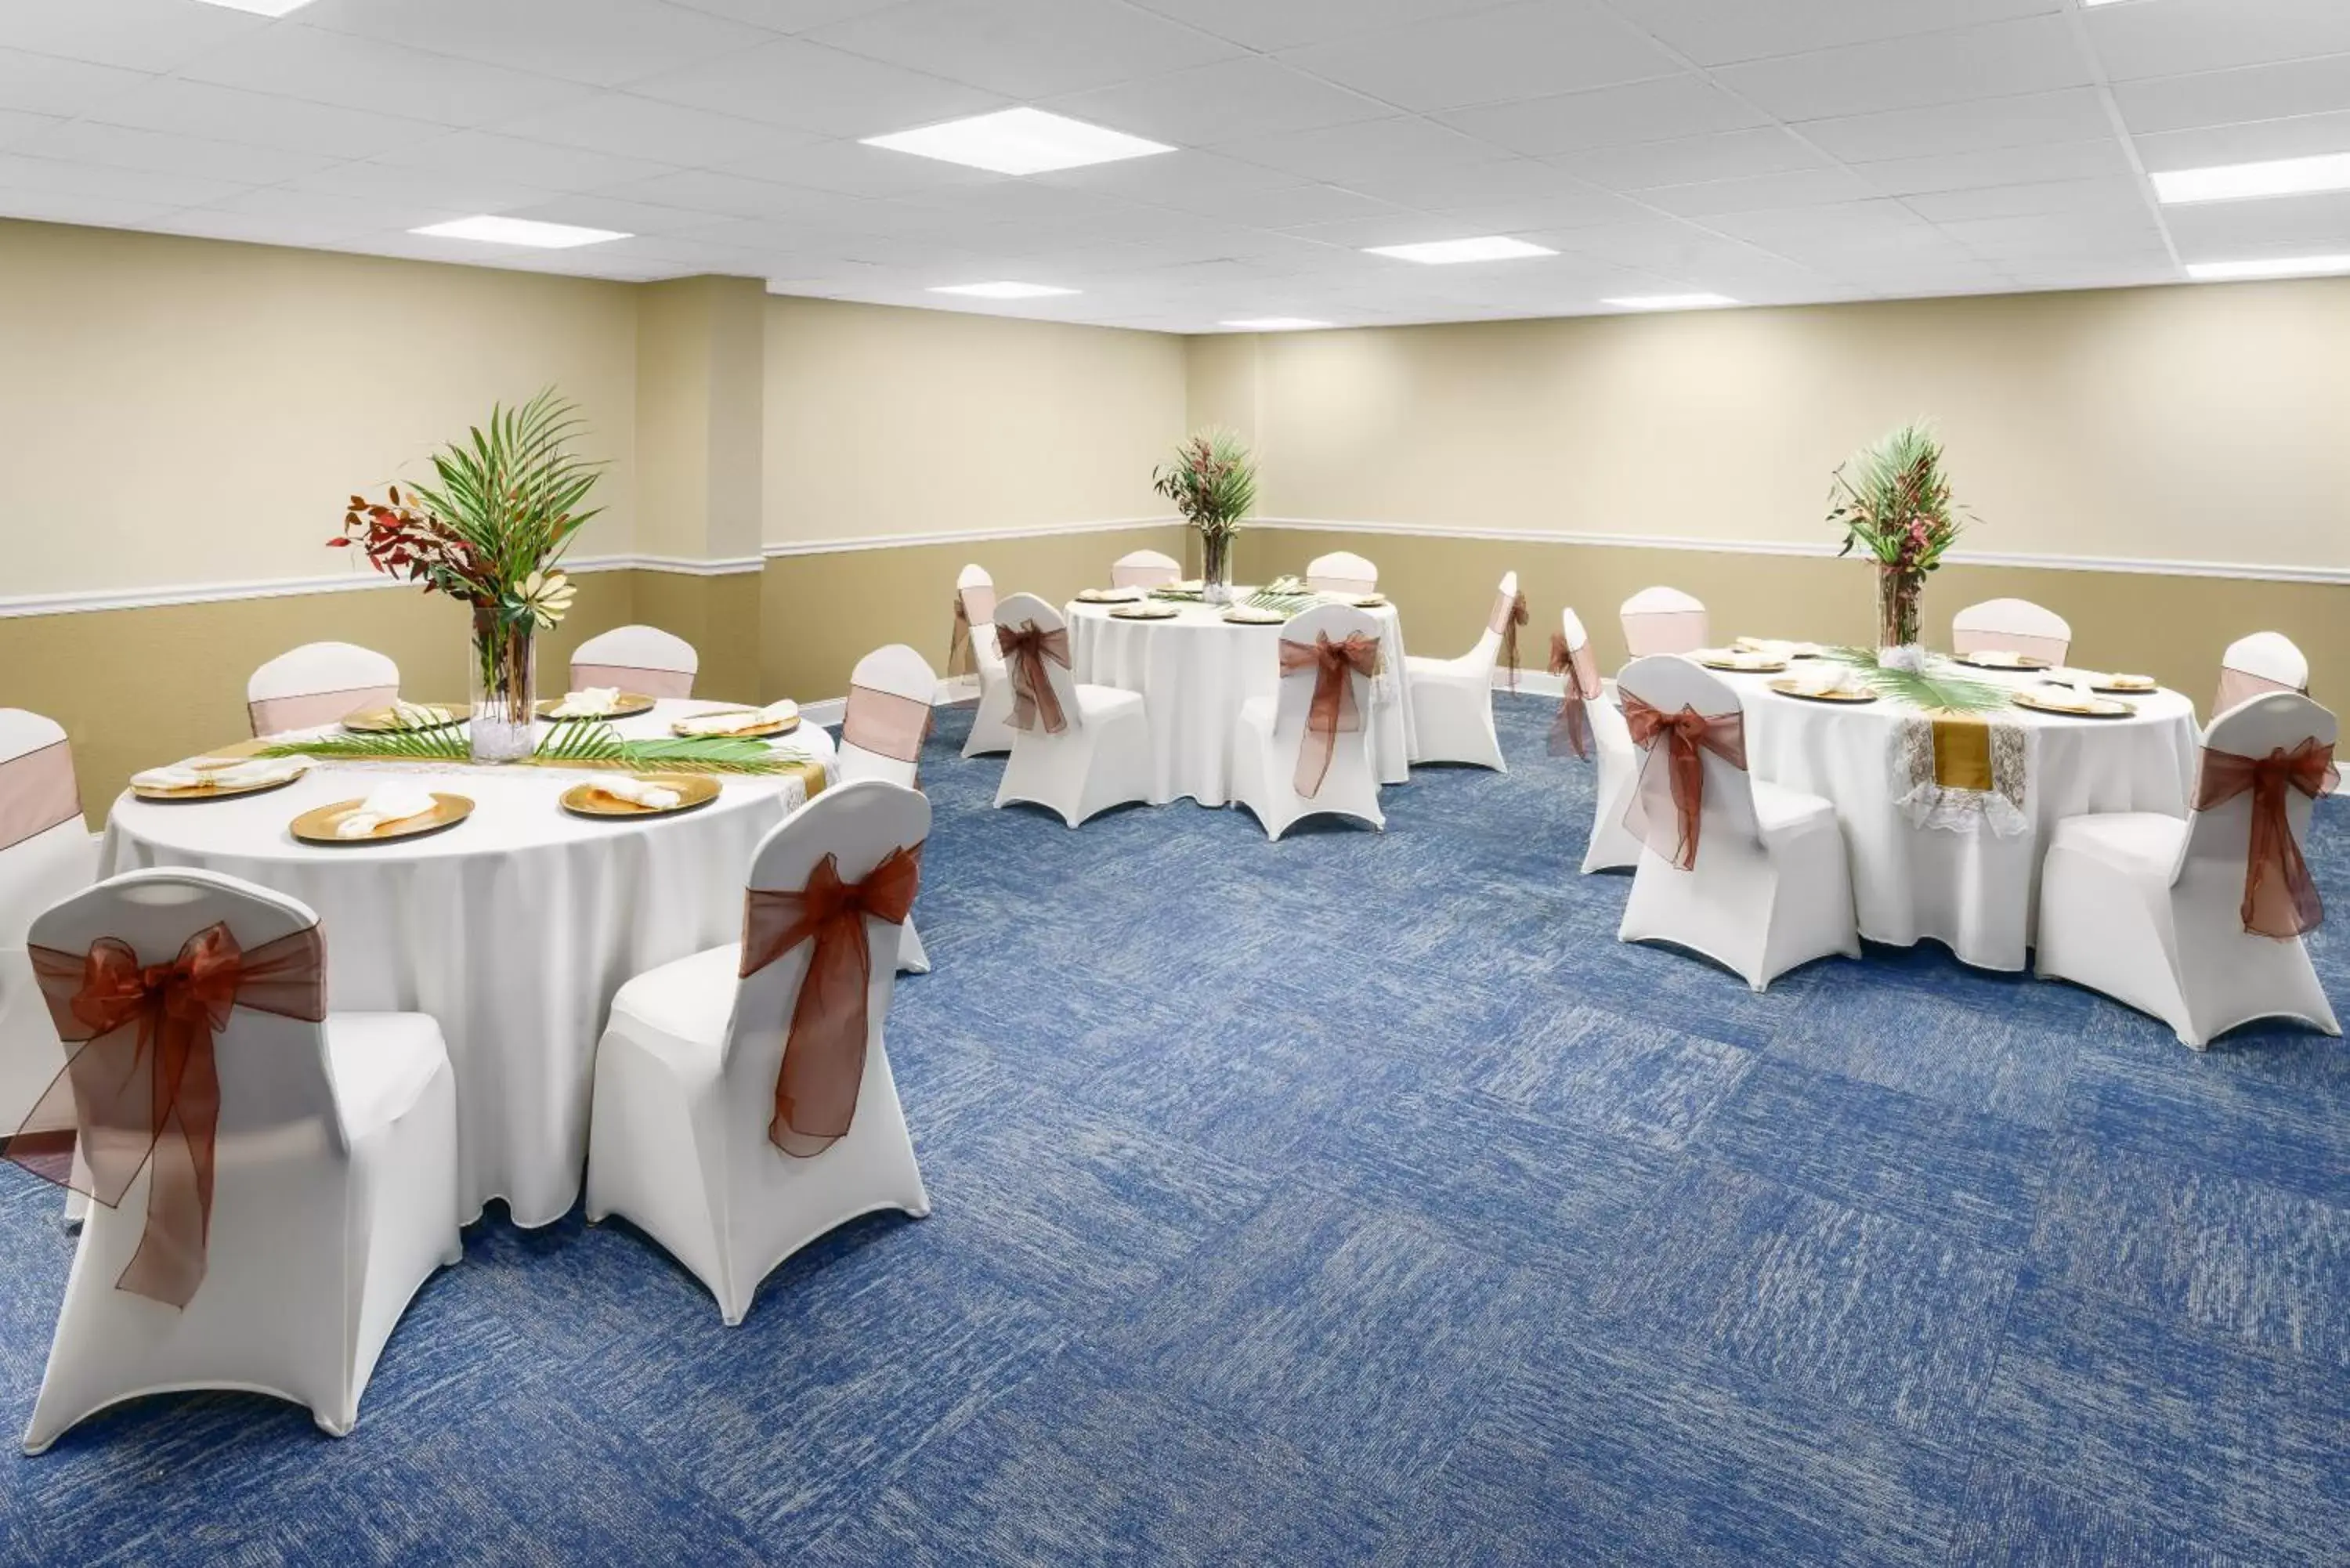 Banquet/Function facilities, Banquet Facilities in Coco Key Hotel & Water Park Resort